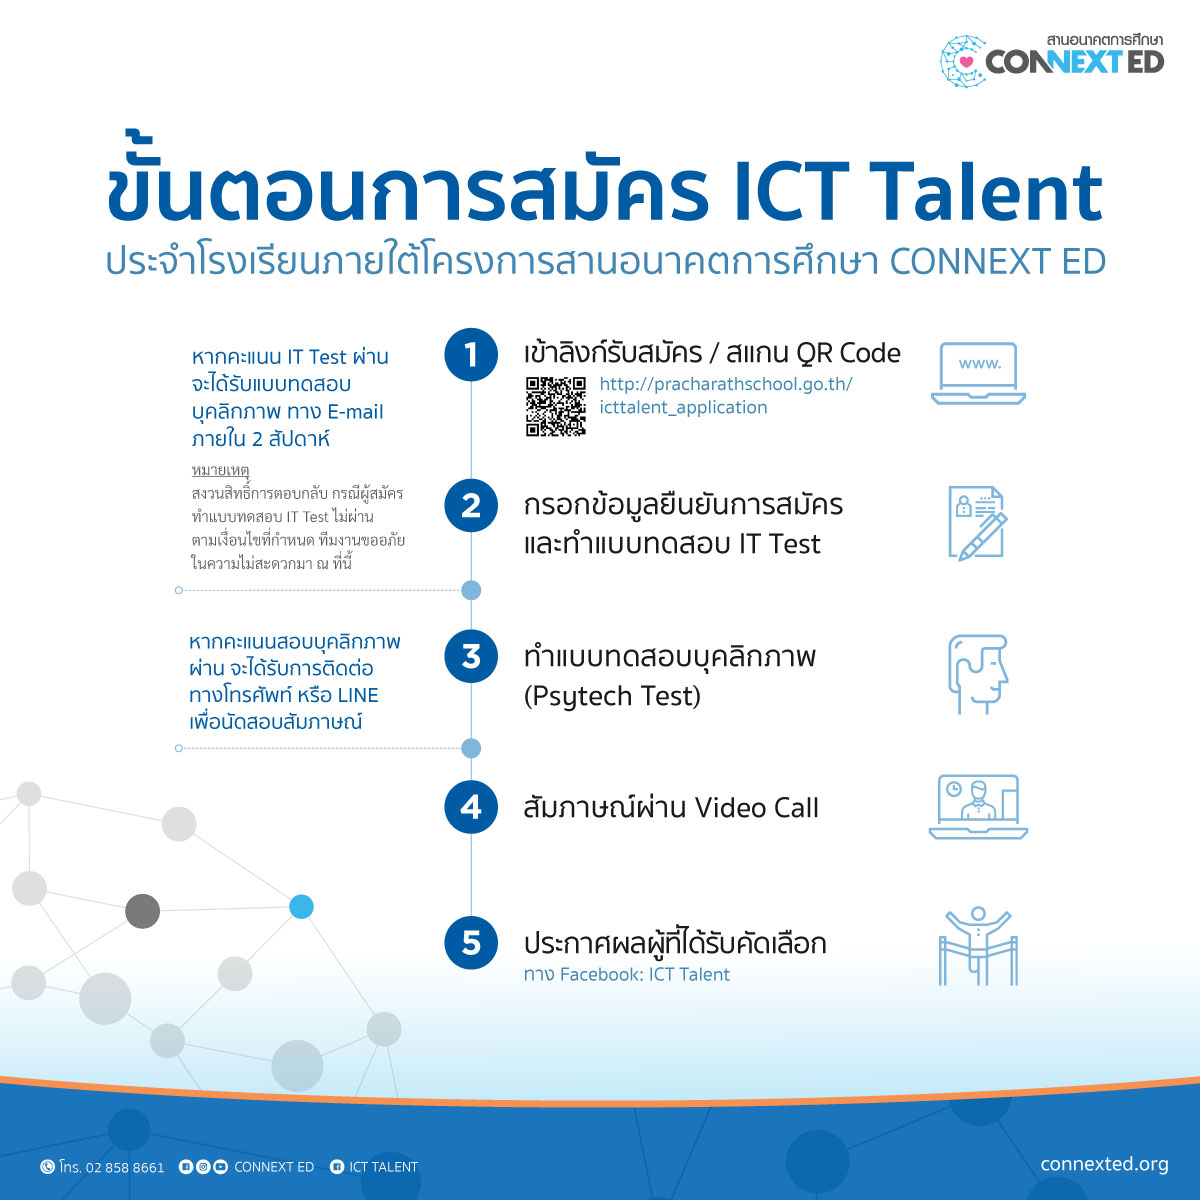 รับสมัคร ICT Talent (เจ้าหน้าที่ ICT) ประจำโรงเรียน วุฒิปริญญาตรี เงินเดือน 15,000 + บาท